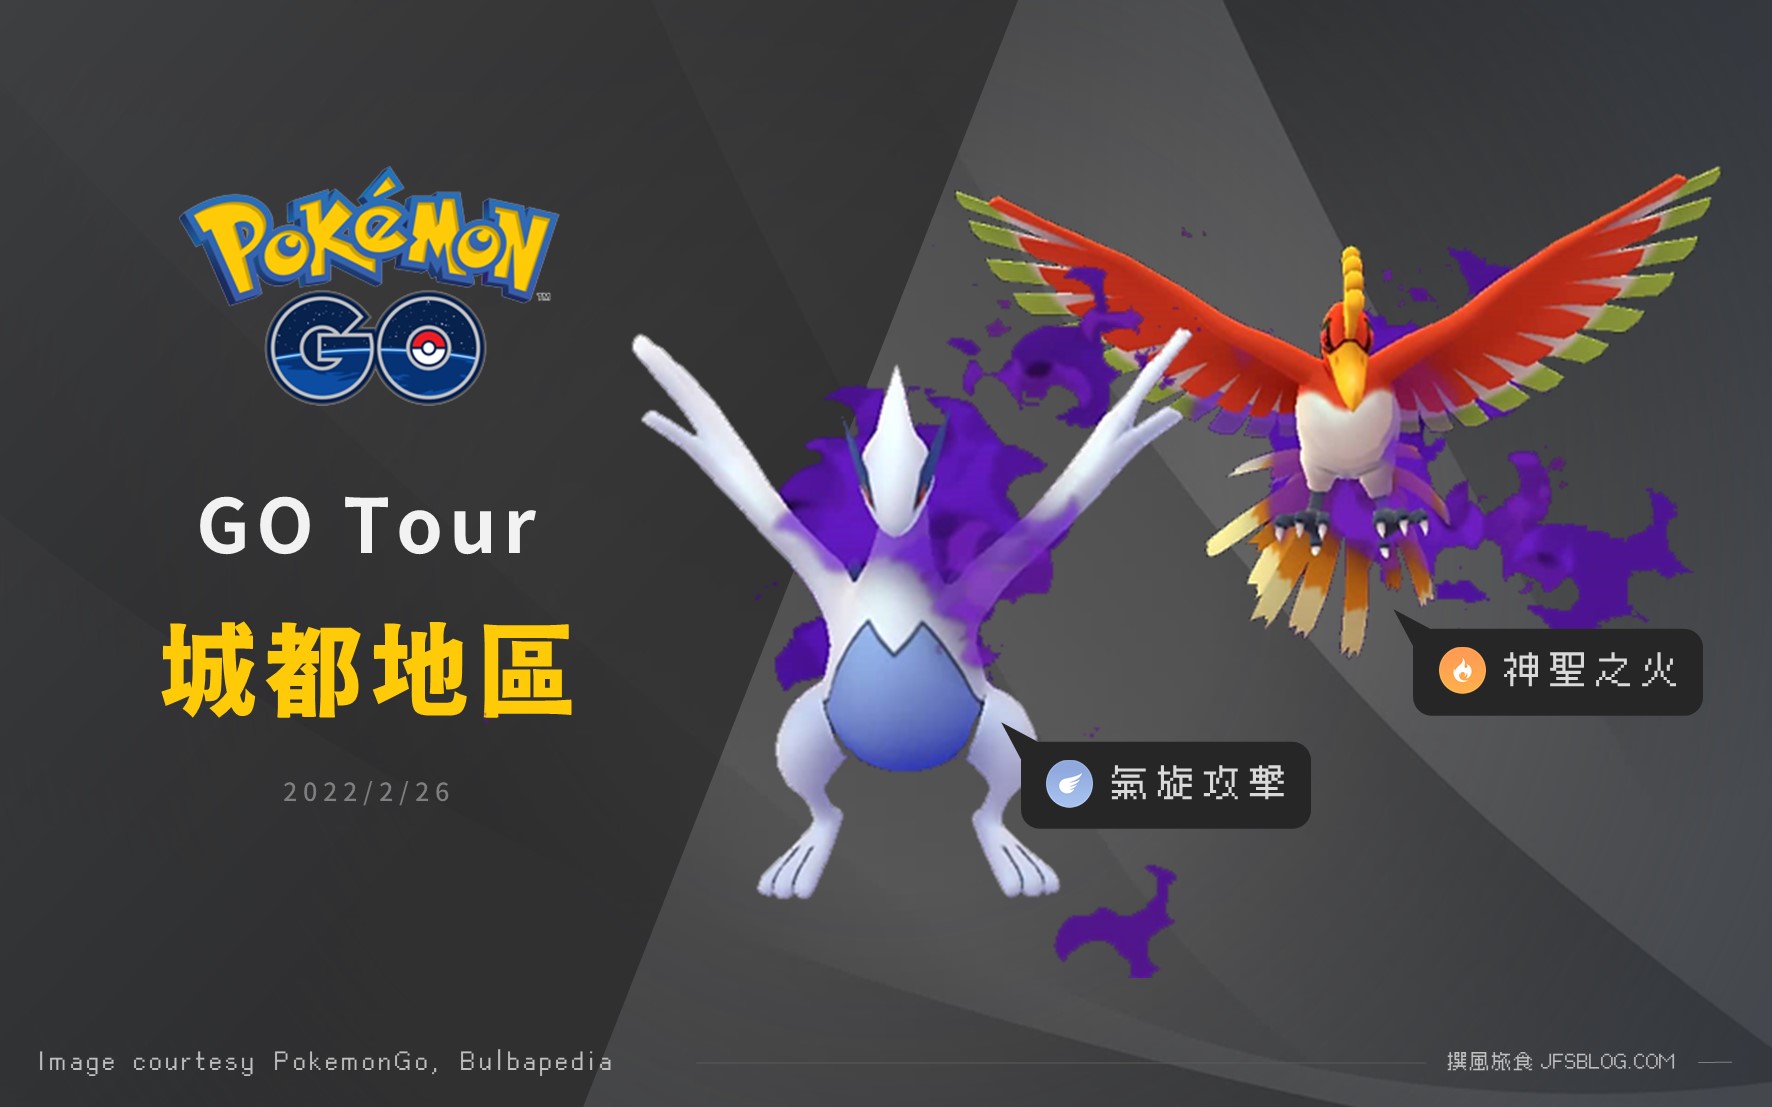 Pokemon GO／Pokémon GO Tour城都地區開始，至尊暗影鳳王與洛奇亞絕版招式出沒！沒購票玩家一樣也能抓好抓滿